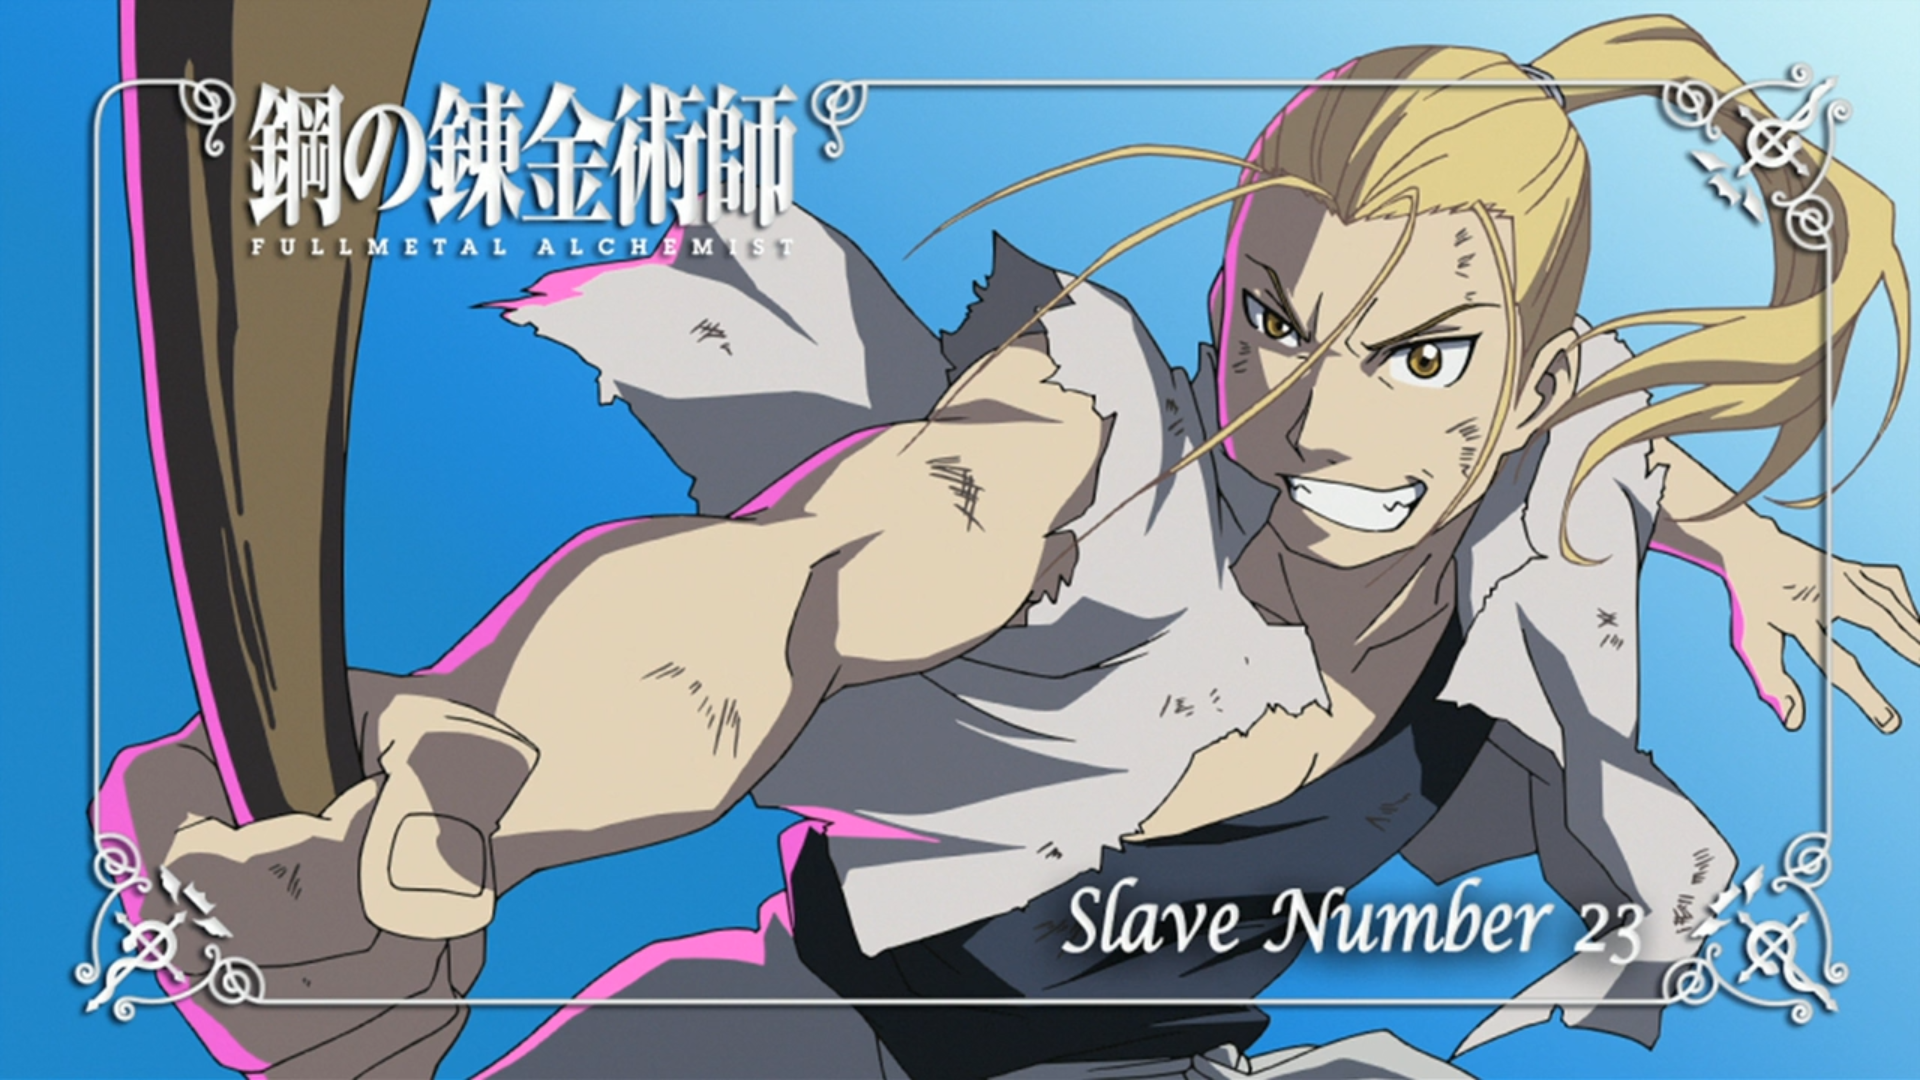 Anime 1920x1080 Fullmetal Alchemist: Brotherhood Van Hohenheim anime blue background